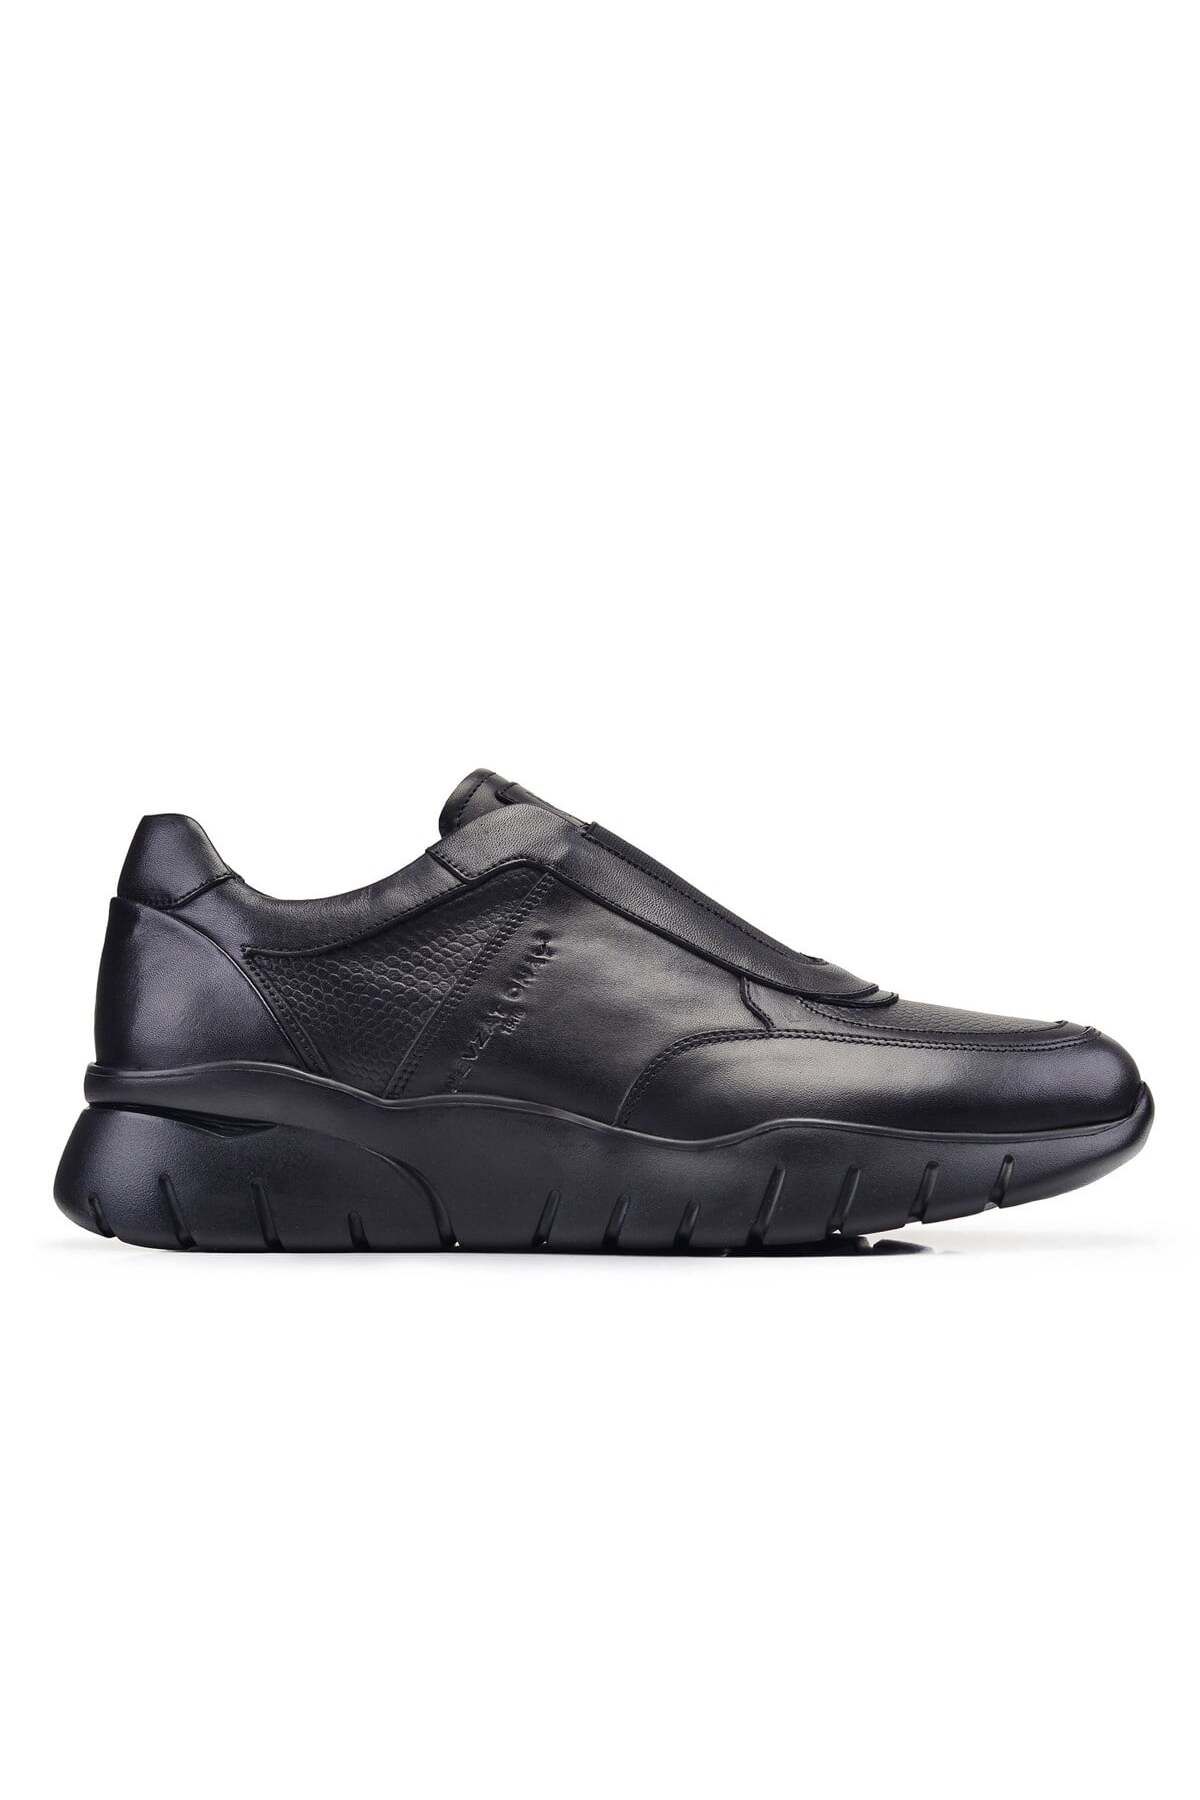 Nevzat Onay Siyah Sneaker Erkek Ayakkabı -12553-